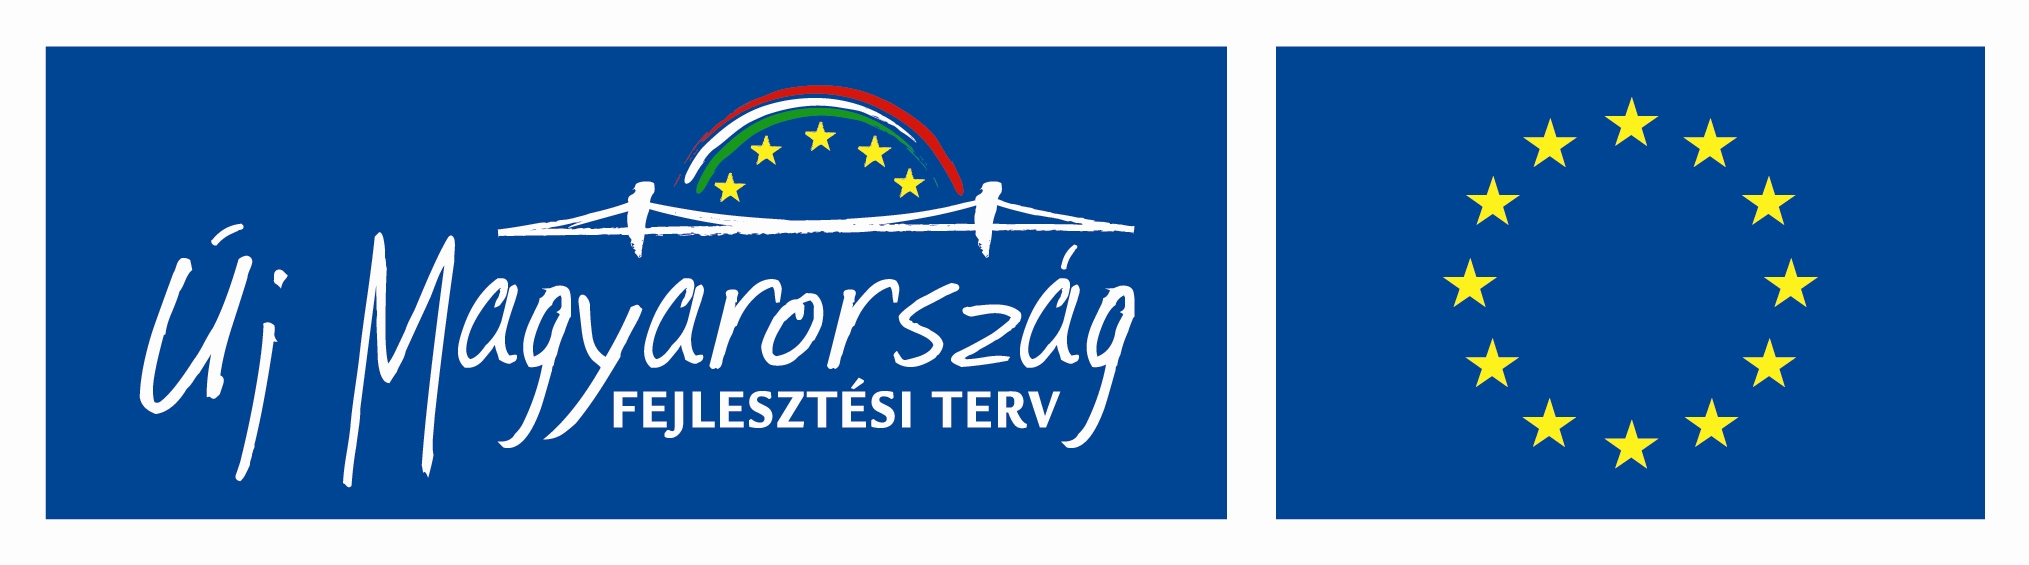 Új Magyarország, EU